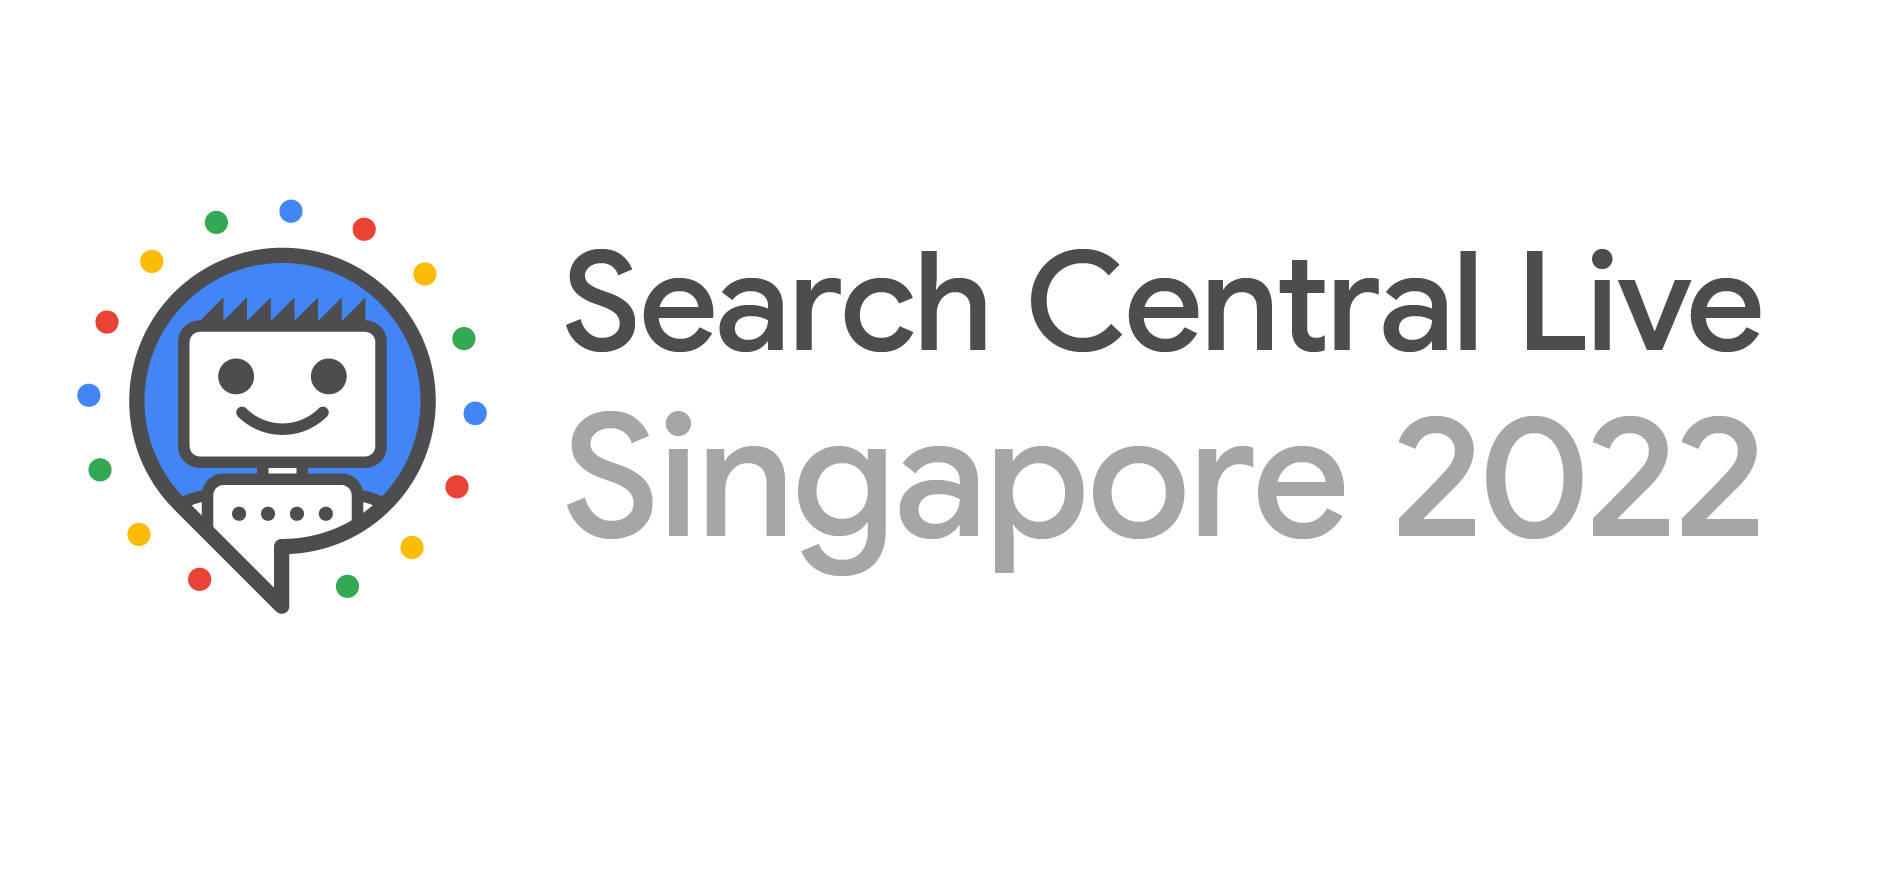 شعار فعالية Search Central Live في سنغافورة للعام 2022